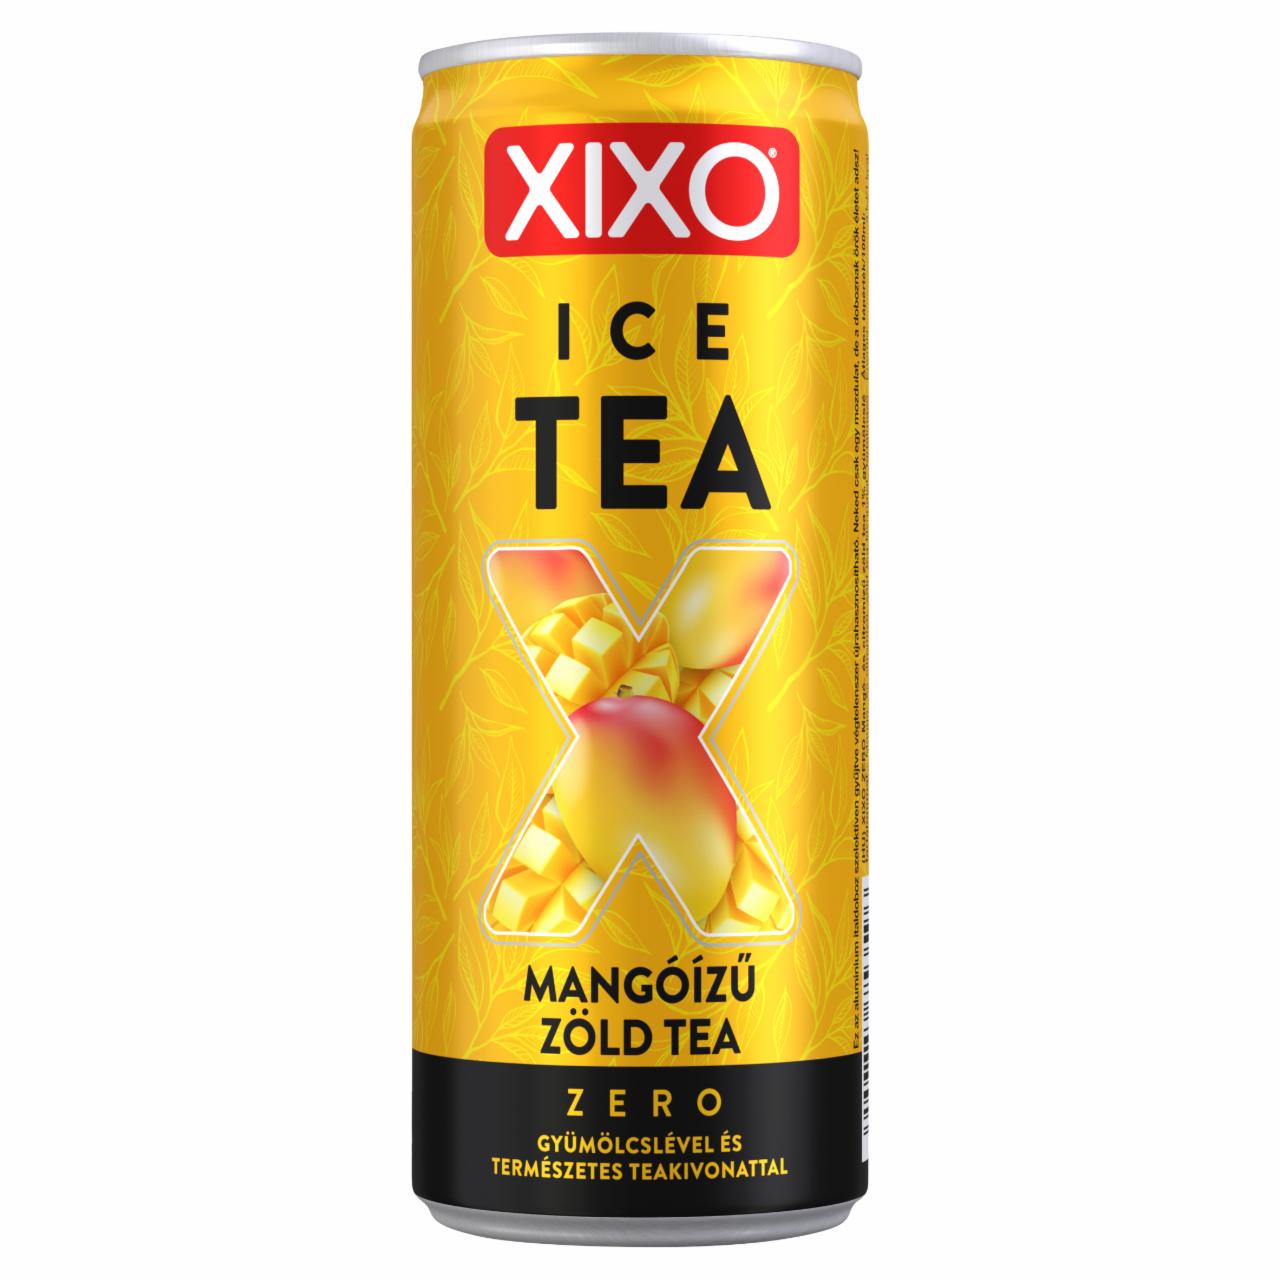 Képek - XIXO Ice Tea Zero mangóízű zöld tea 250 ml